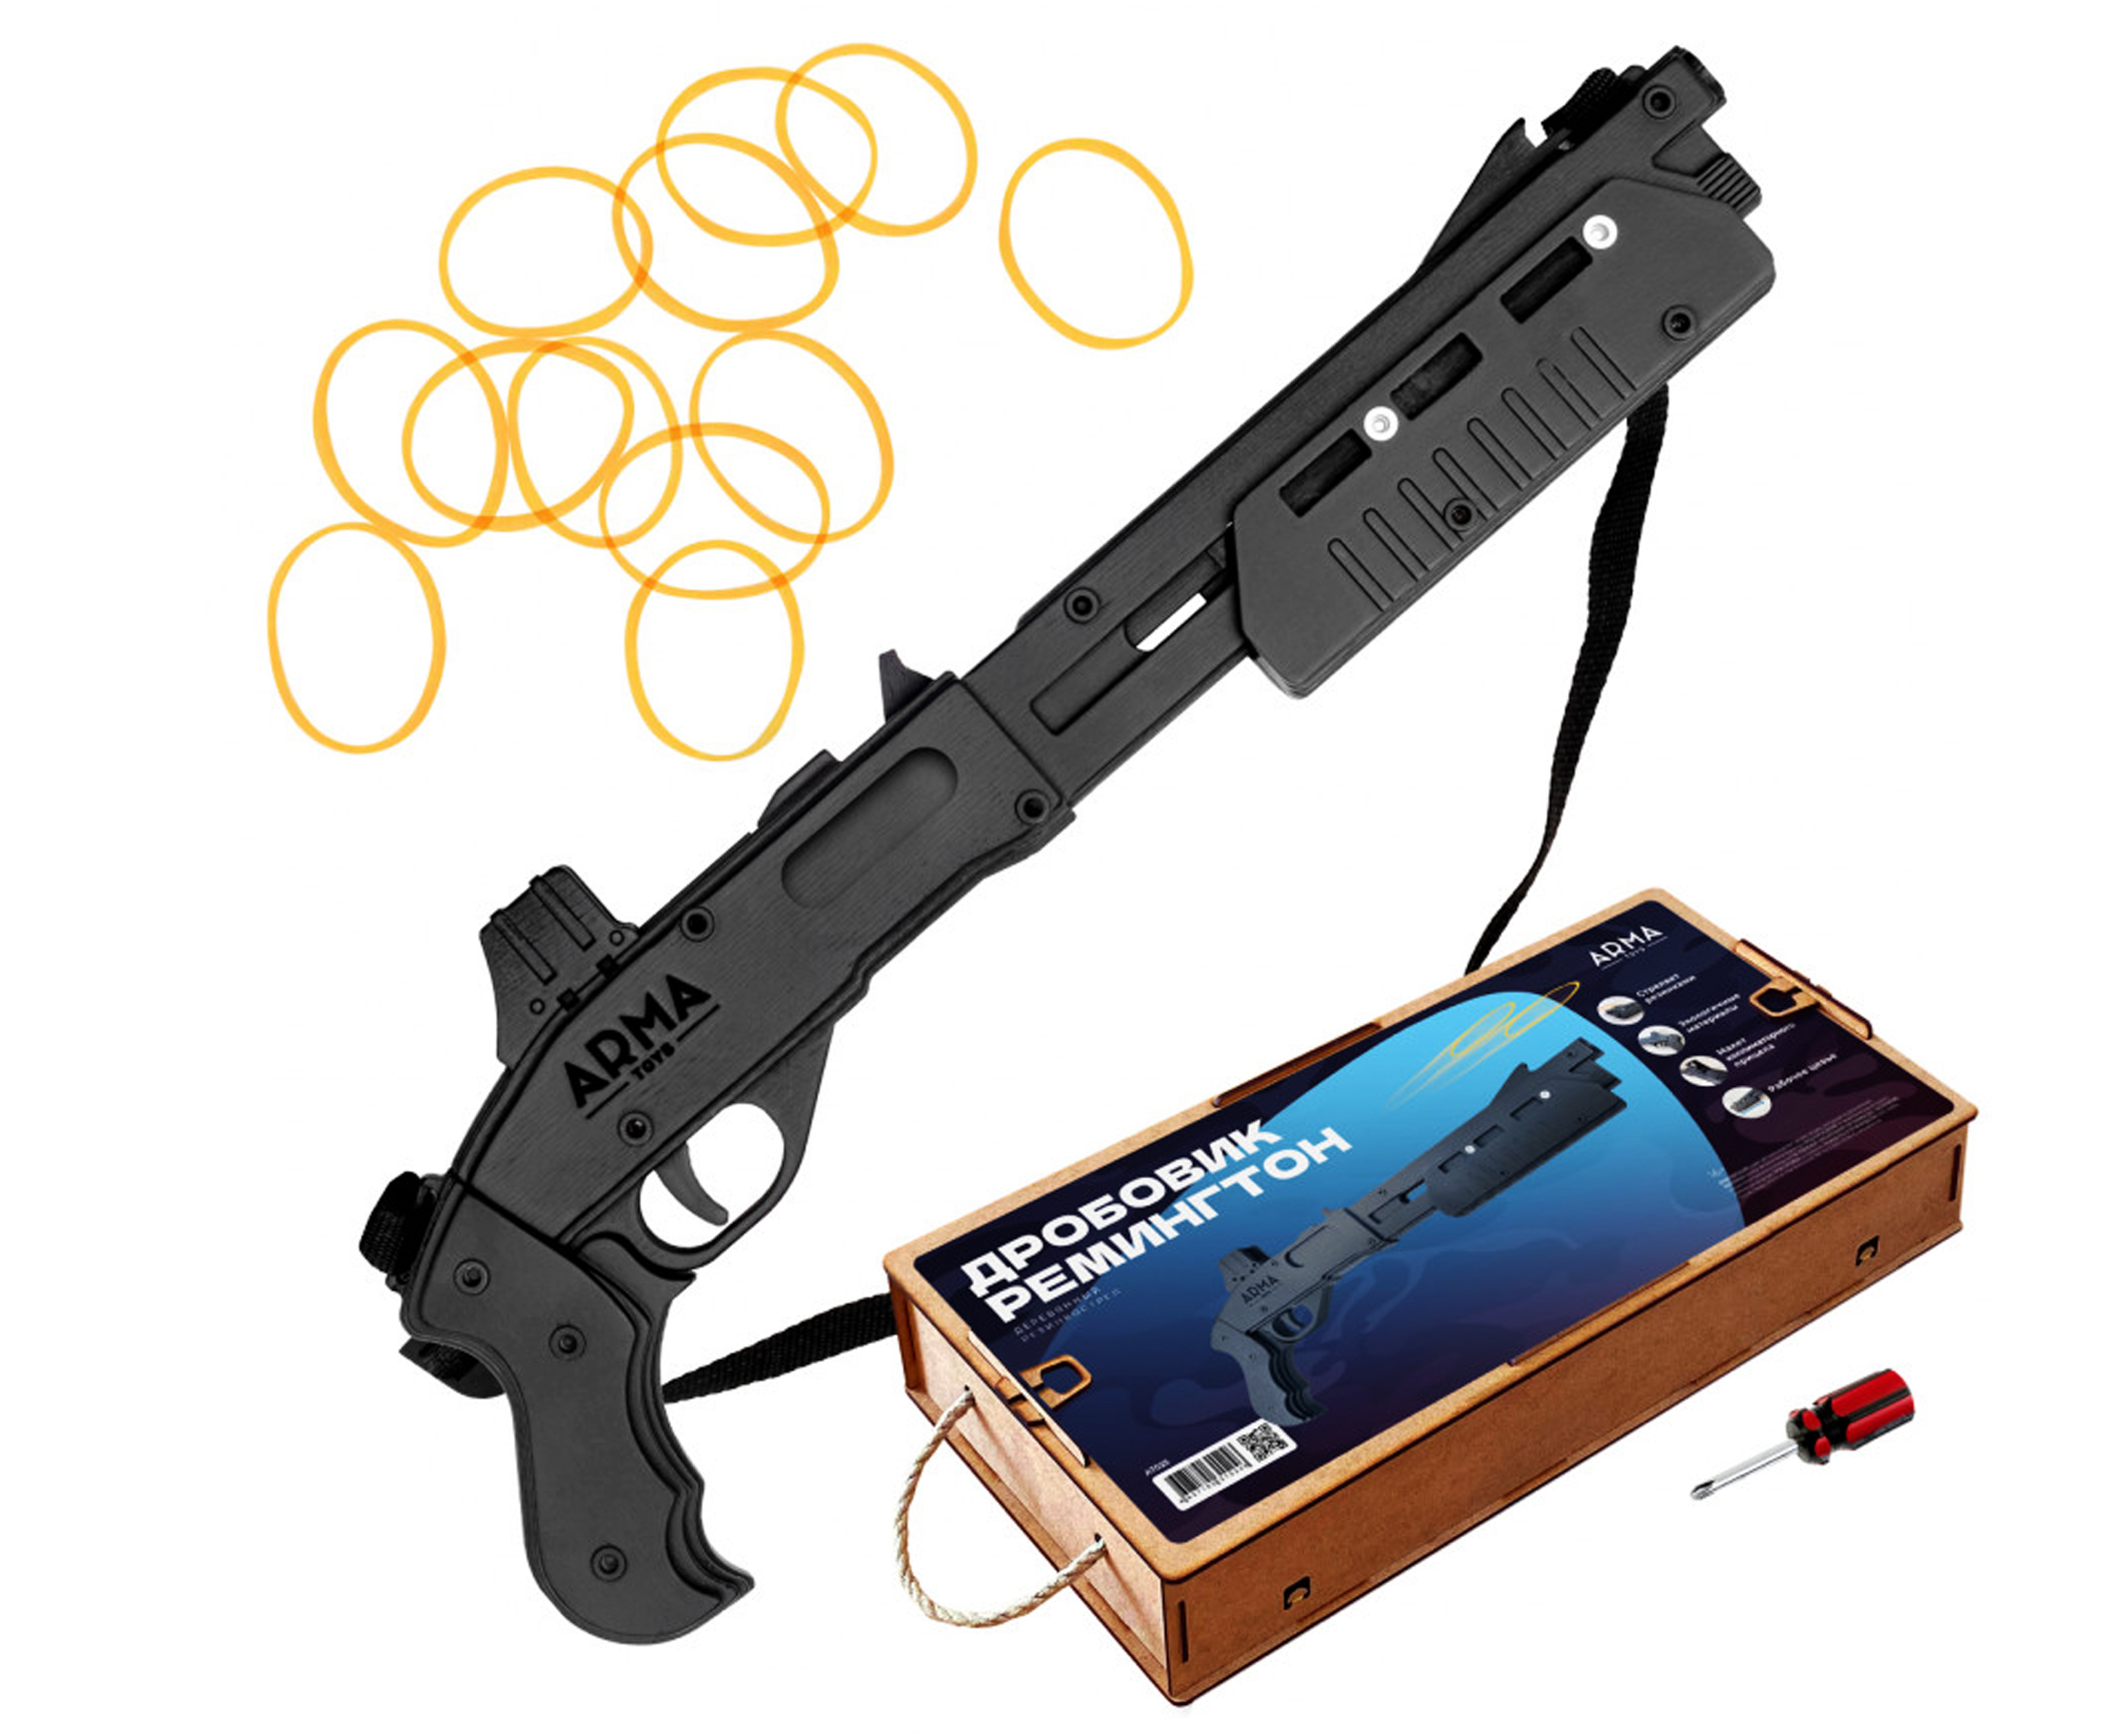 Резинкострел игрушечный Arma toys ружье Remington 870 макет, укороченный, AT025 термобелье remington heat generation синий